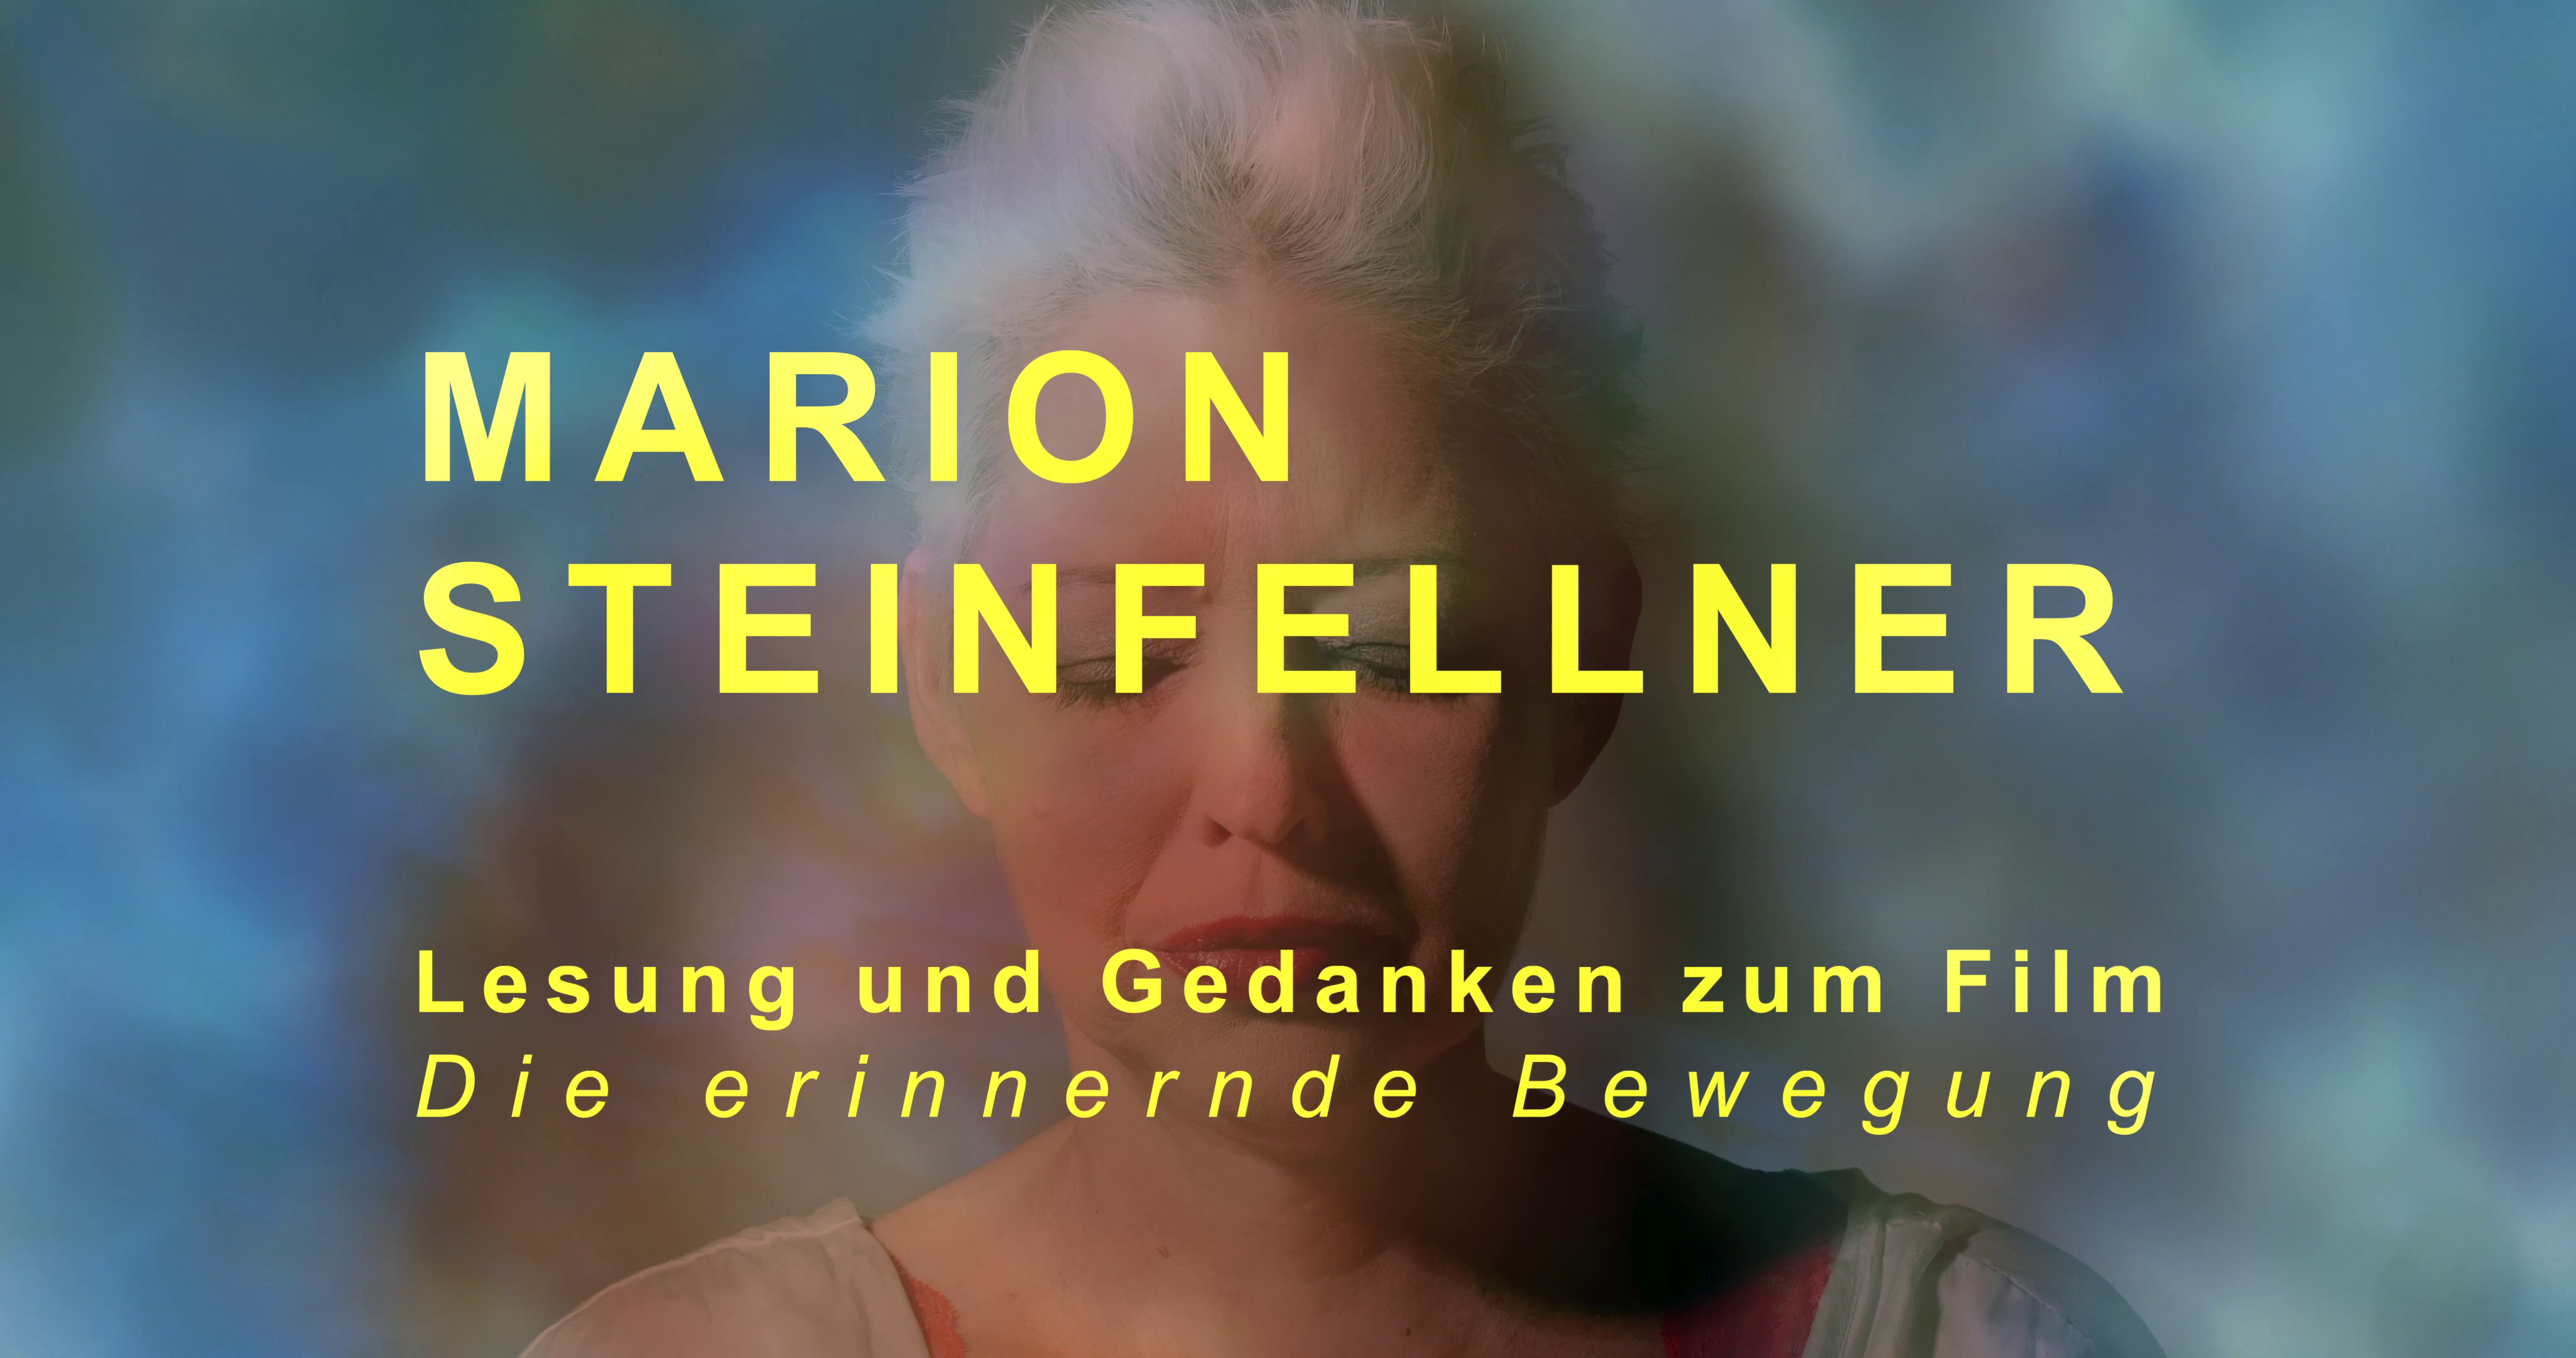 Marion Steinfellner Interview (Still) - by Mersolis Schöne with Marion Steinfellner and Michael Fischer